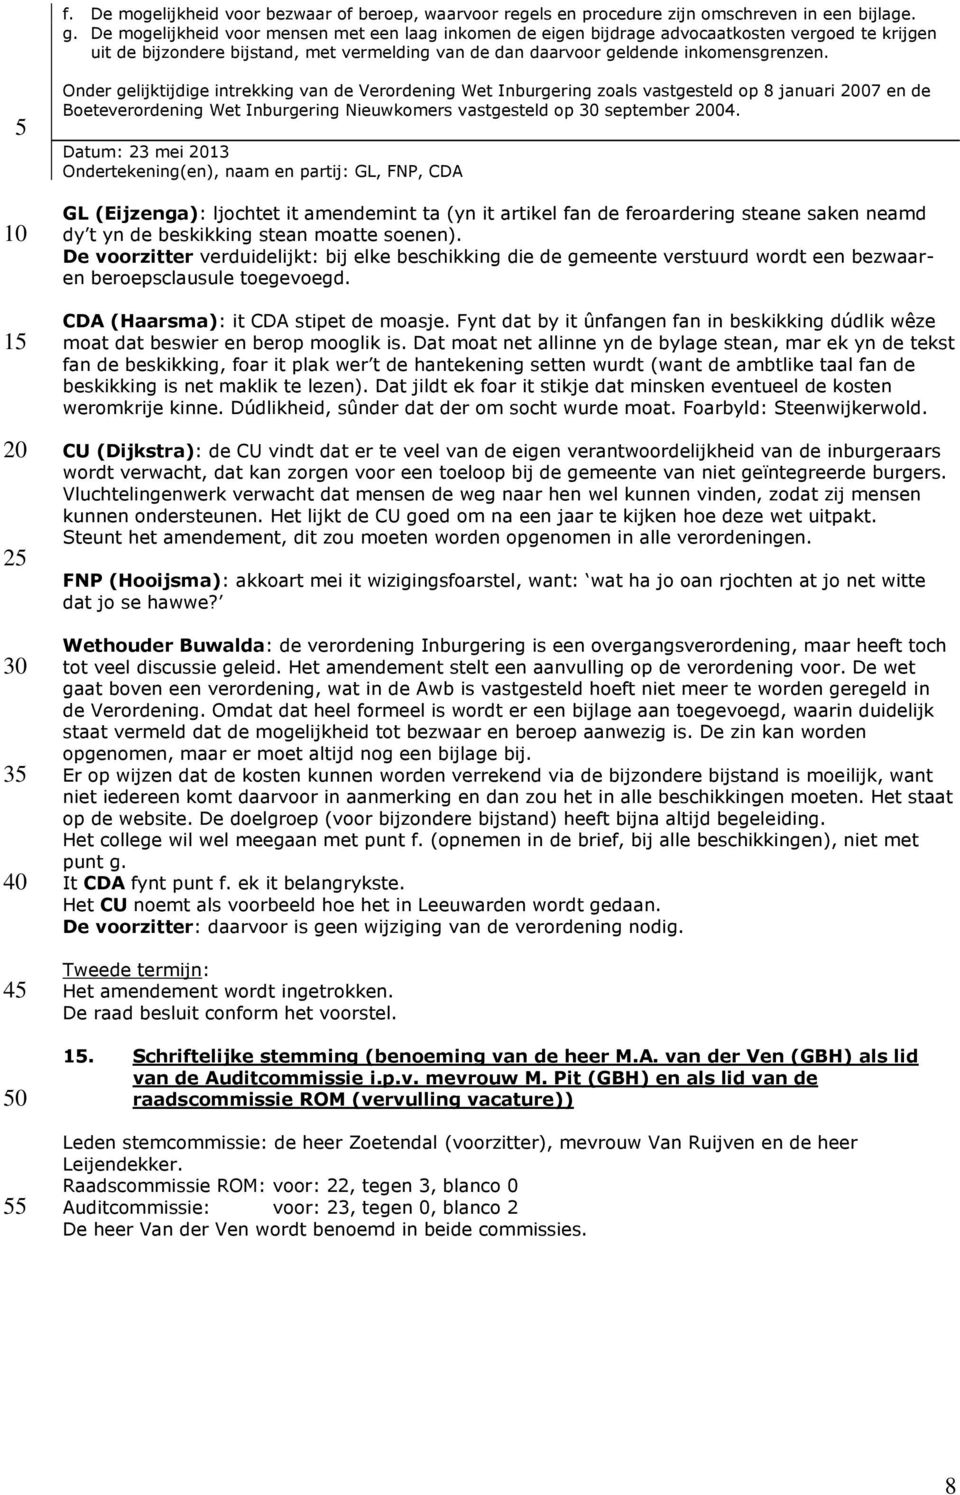 3 Onder gelijktijdige intrekking van de Verordening Wet Inburgering zoals vastgesteld op 8 januari 07 en de Boeteverordening Wet Inburgering Nieuwkomers vastgesteld op september 04.